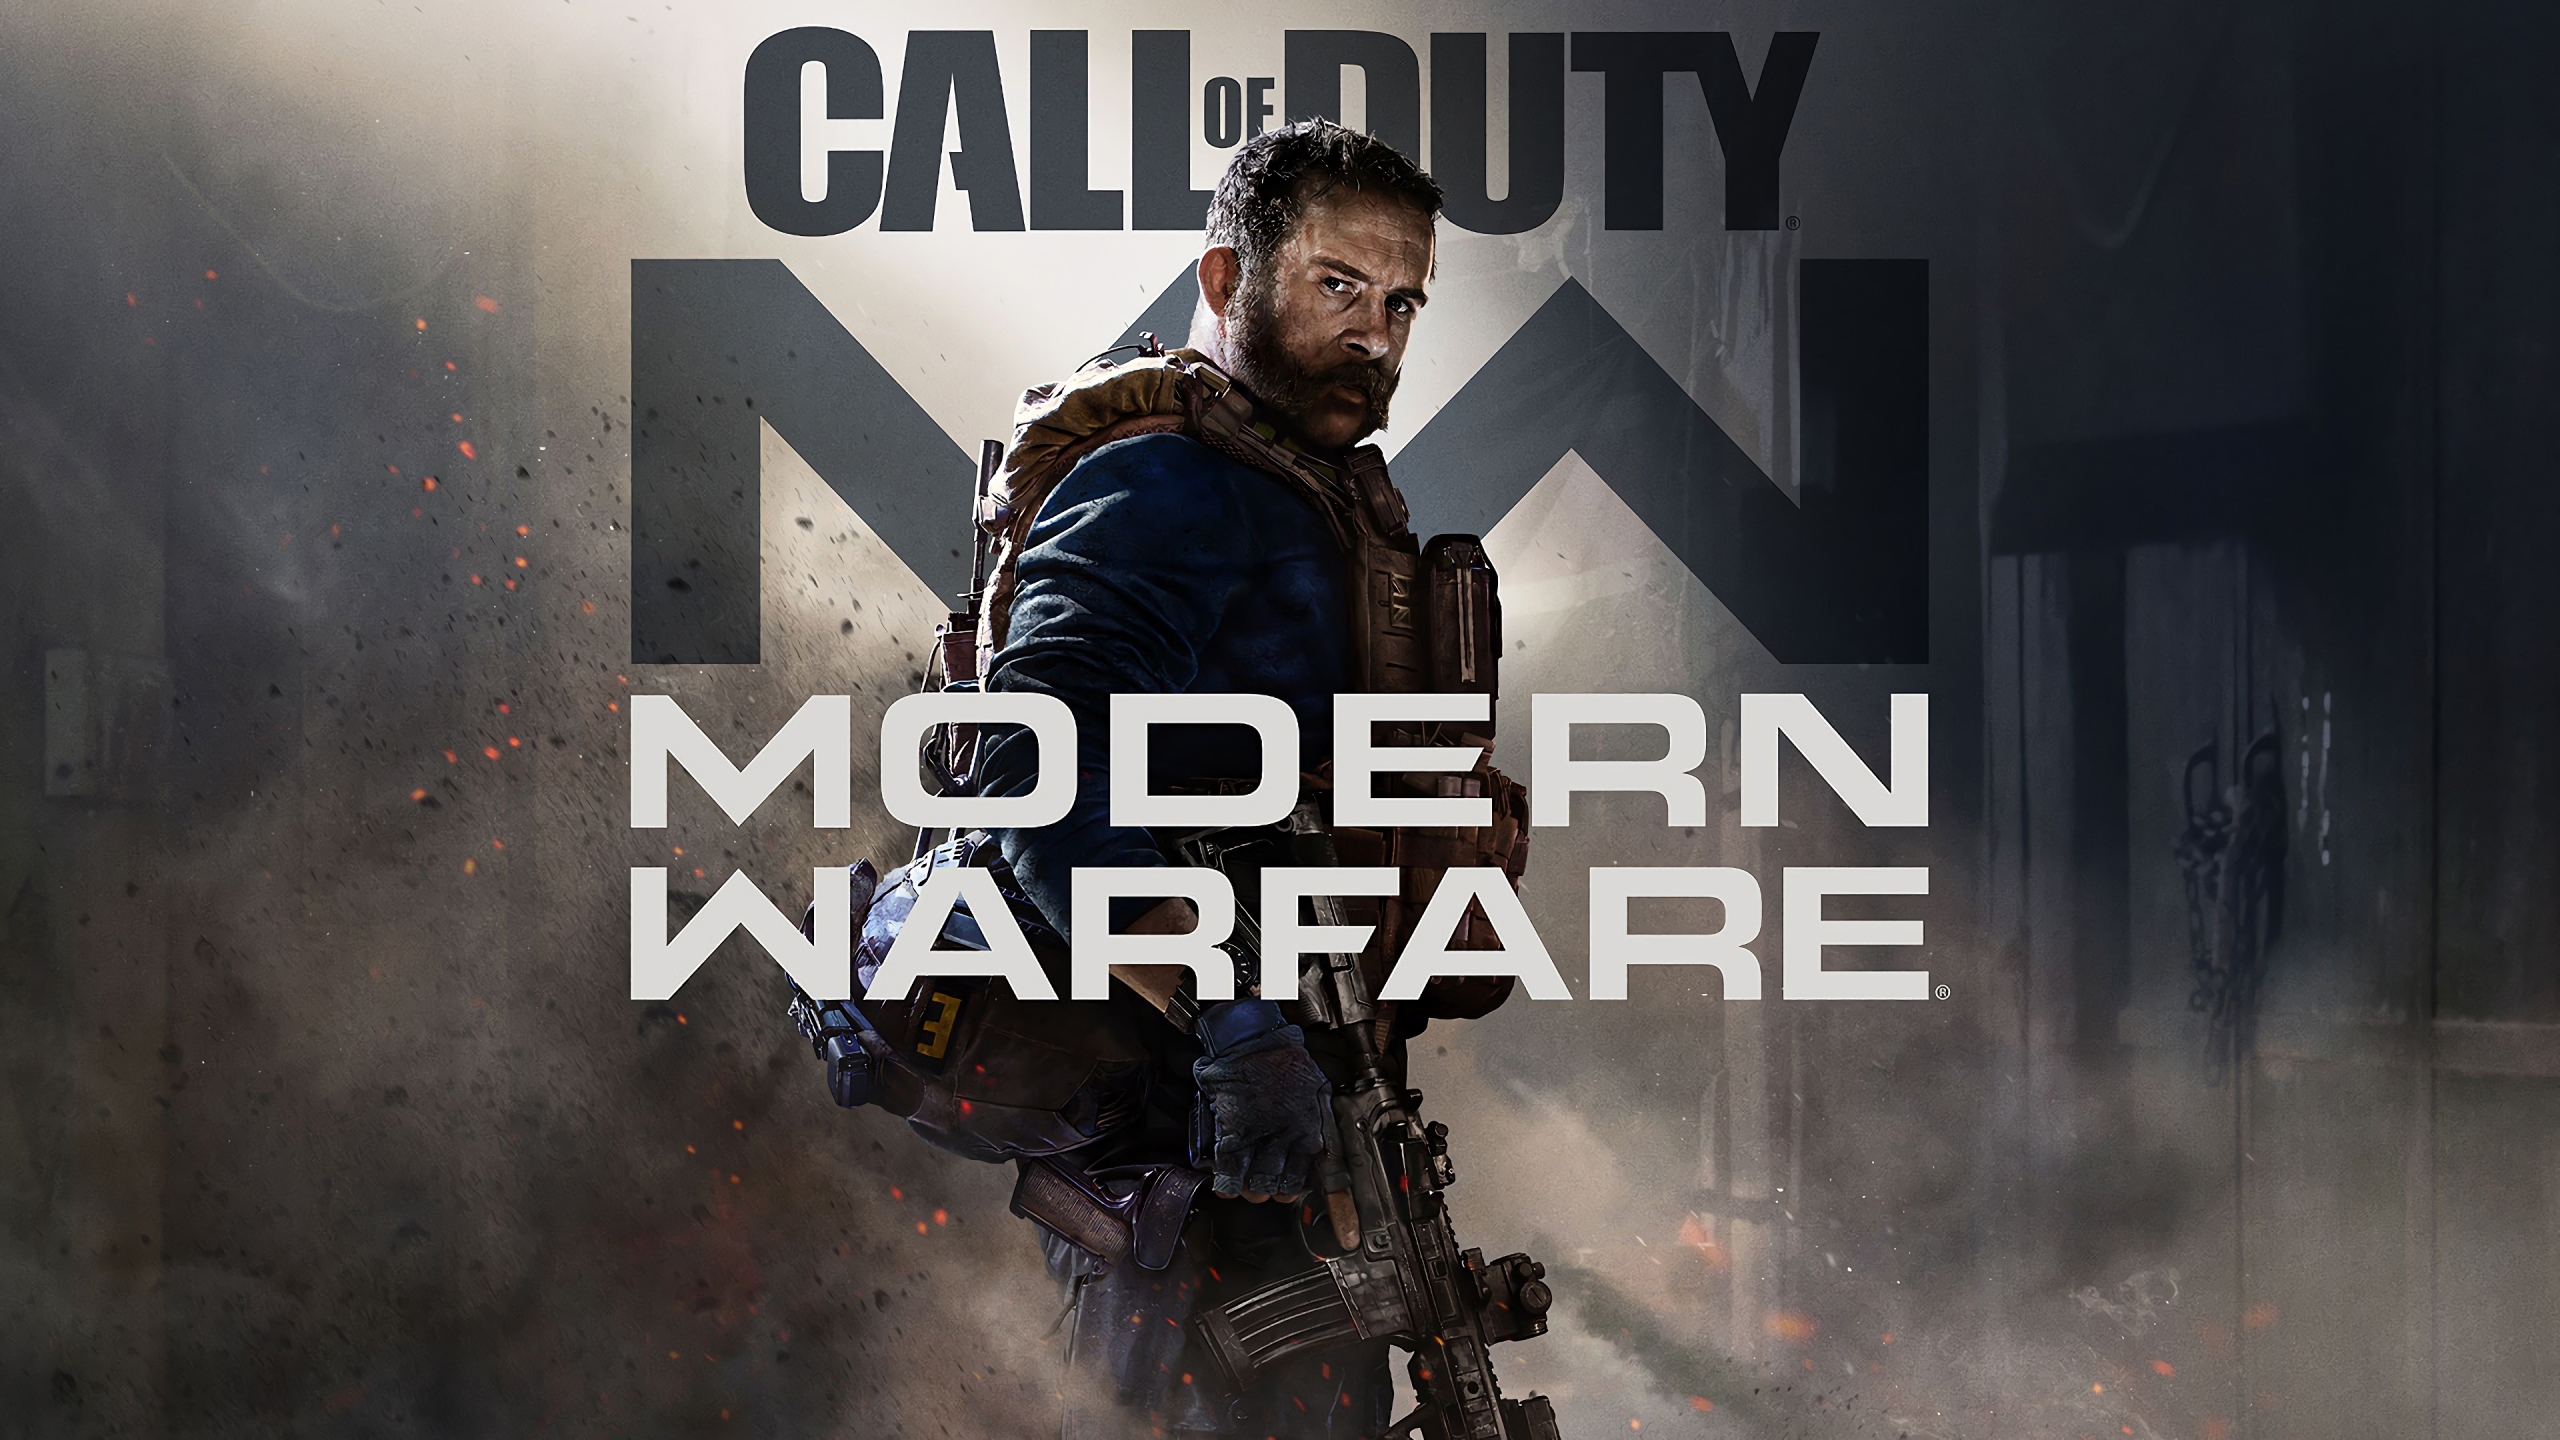 Call Duty Modern Warfare 2019 Wallpaper 4k Ultra HD ID:4006